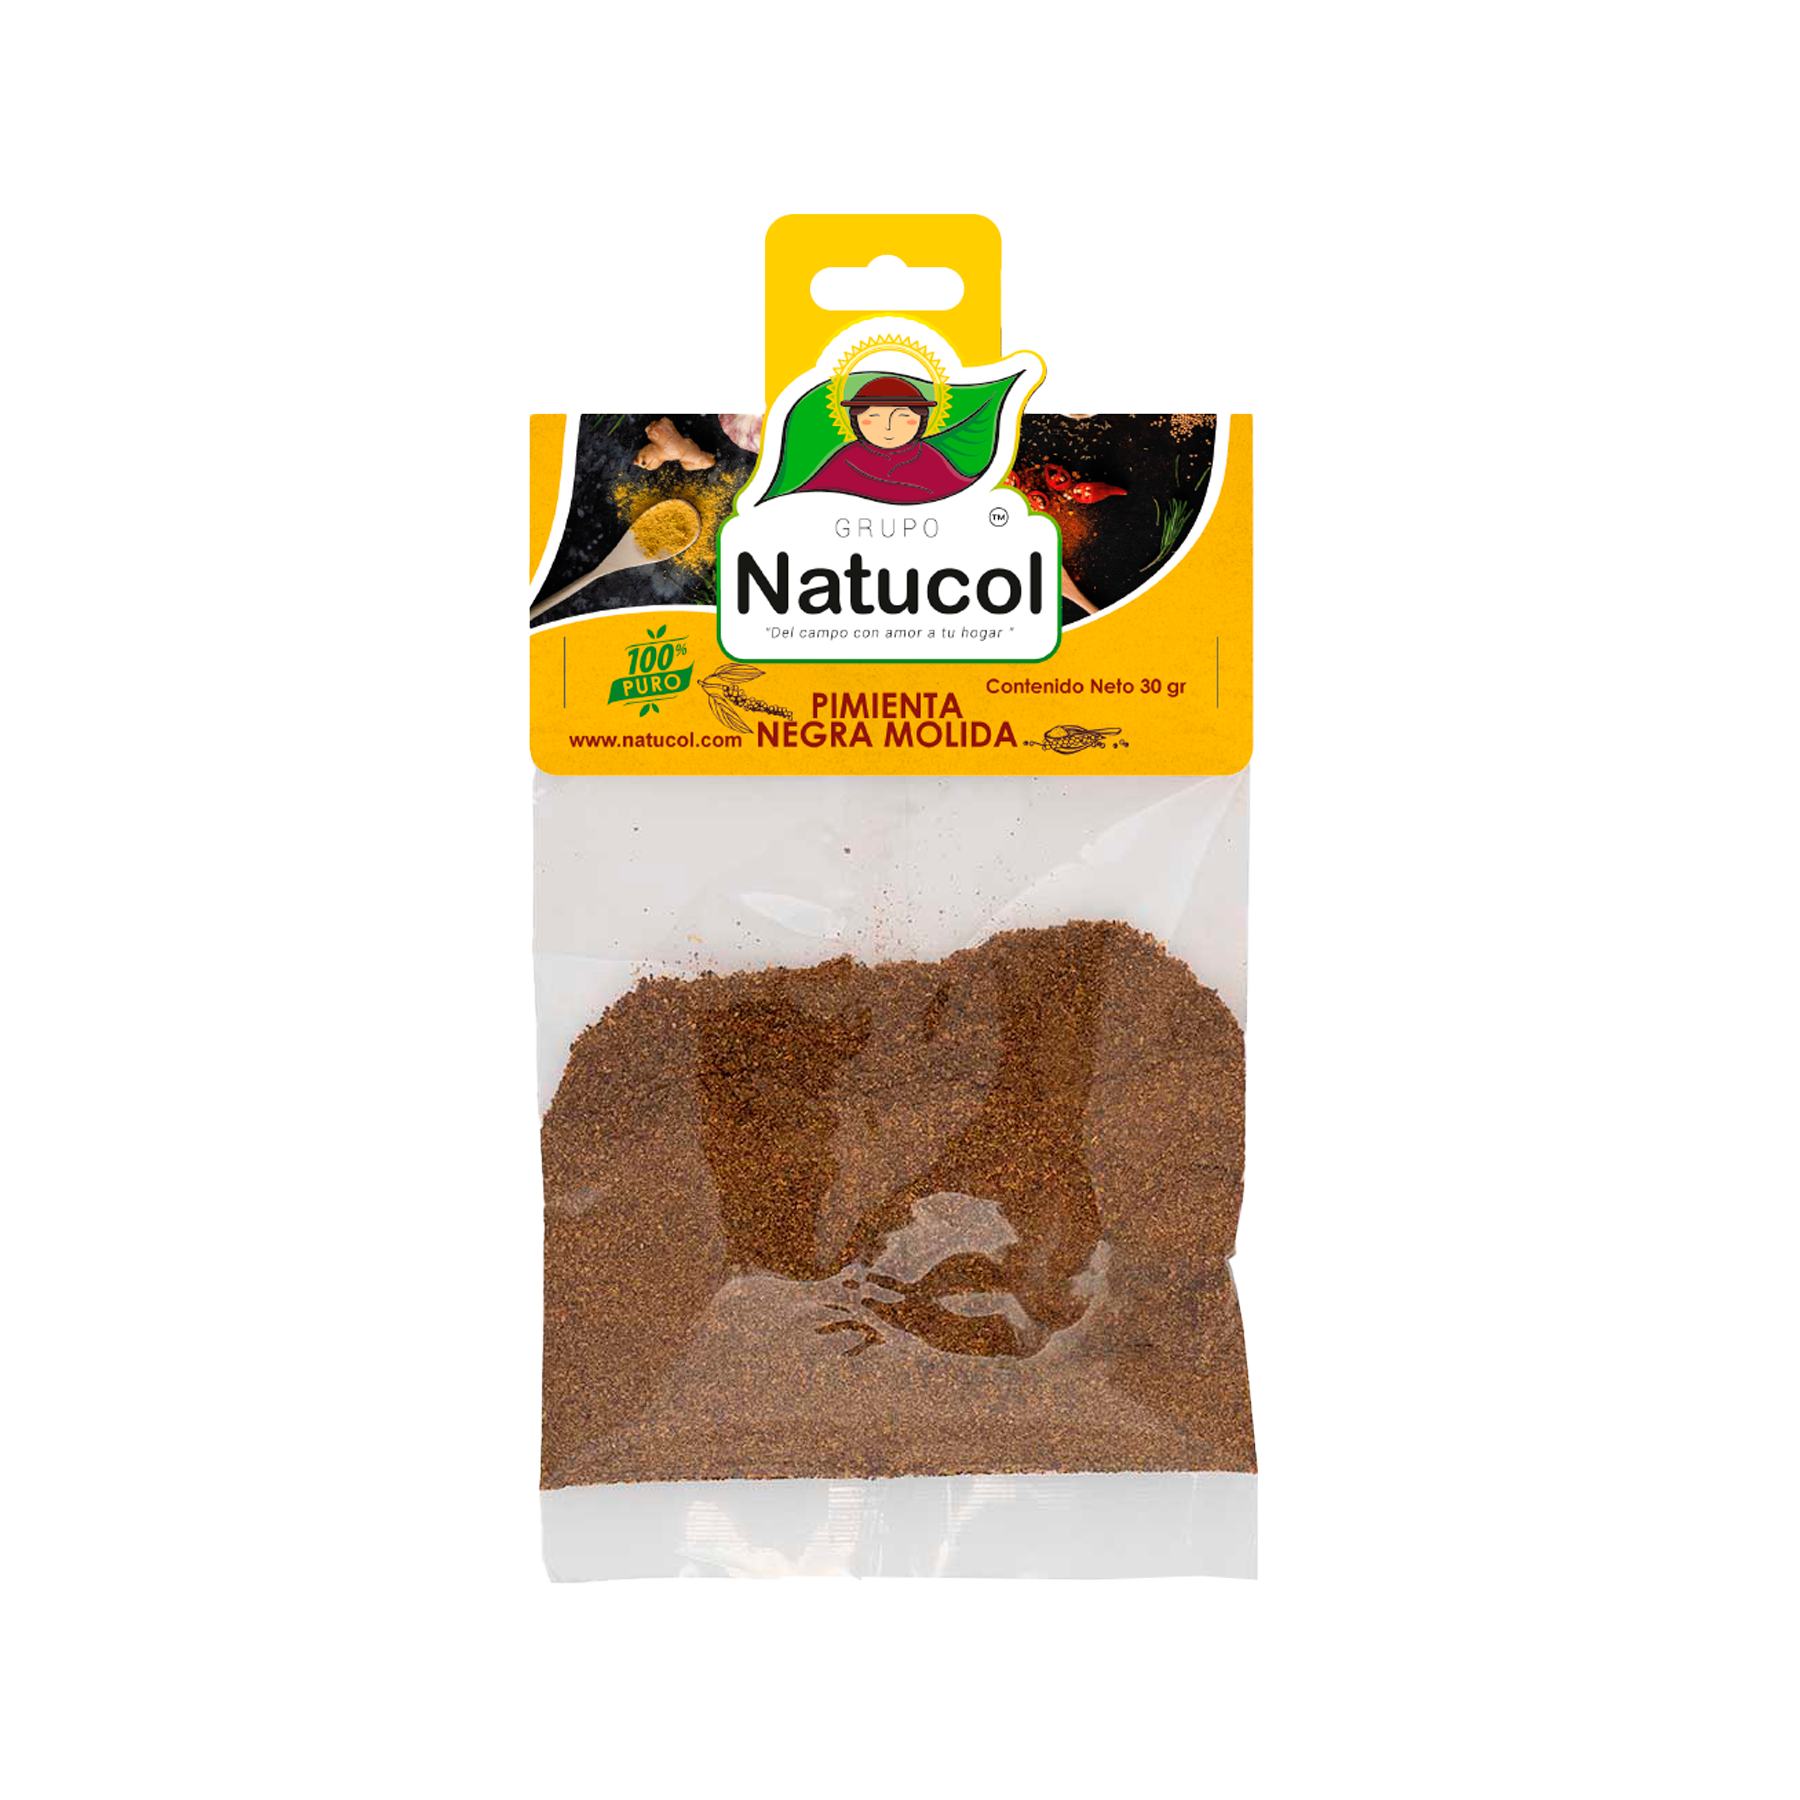 Pimienta Negra Molida 30gr - Natucol - Tienda virtual - 100% Puro